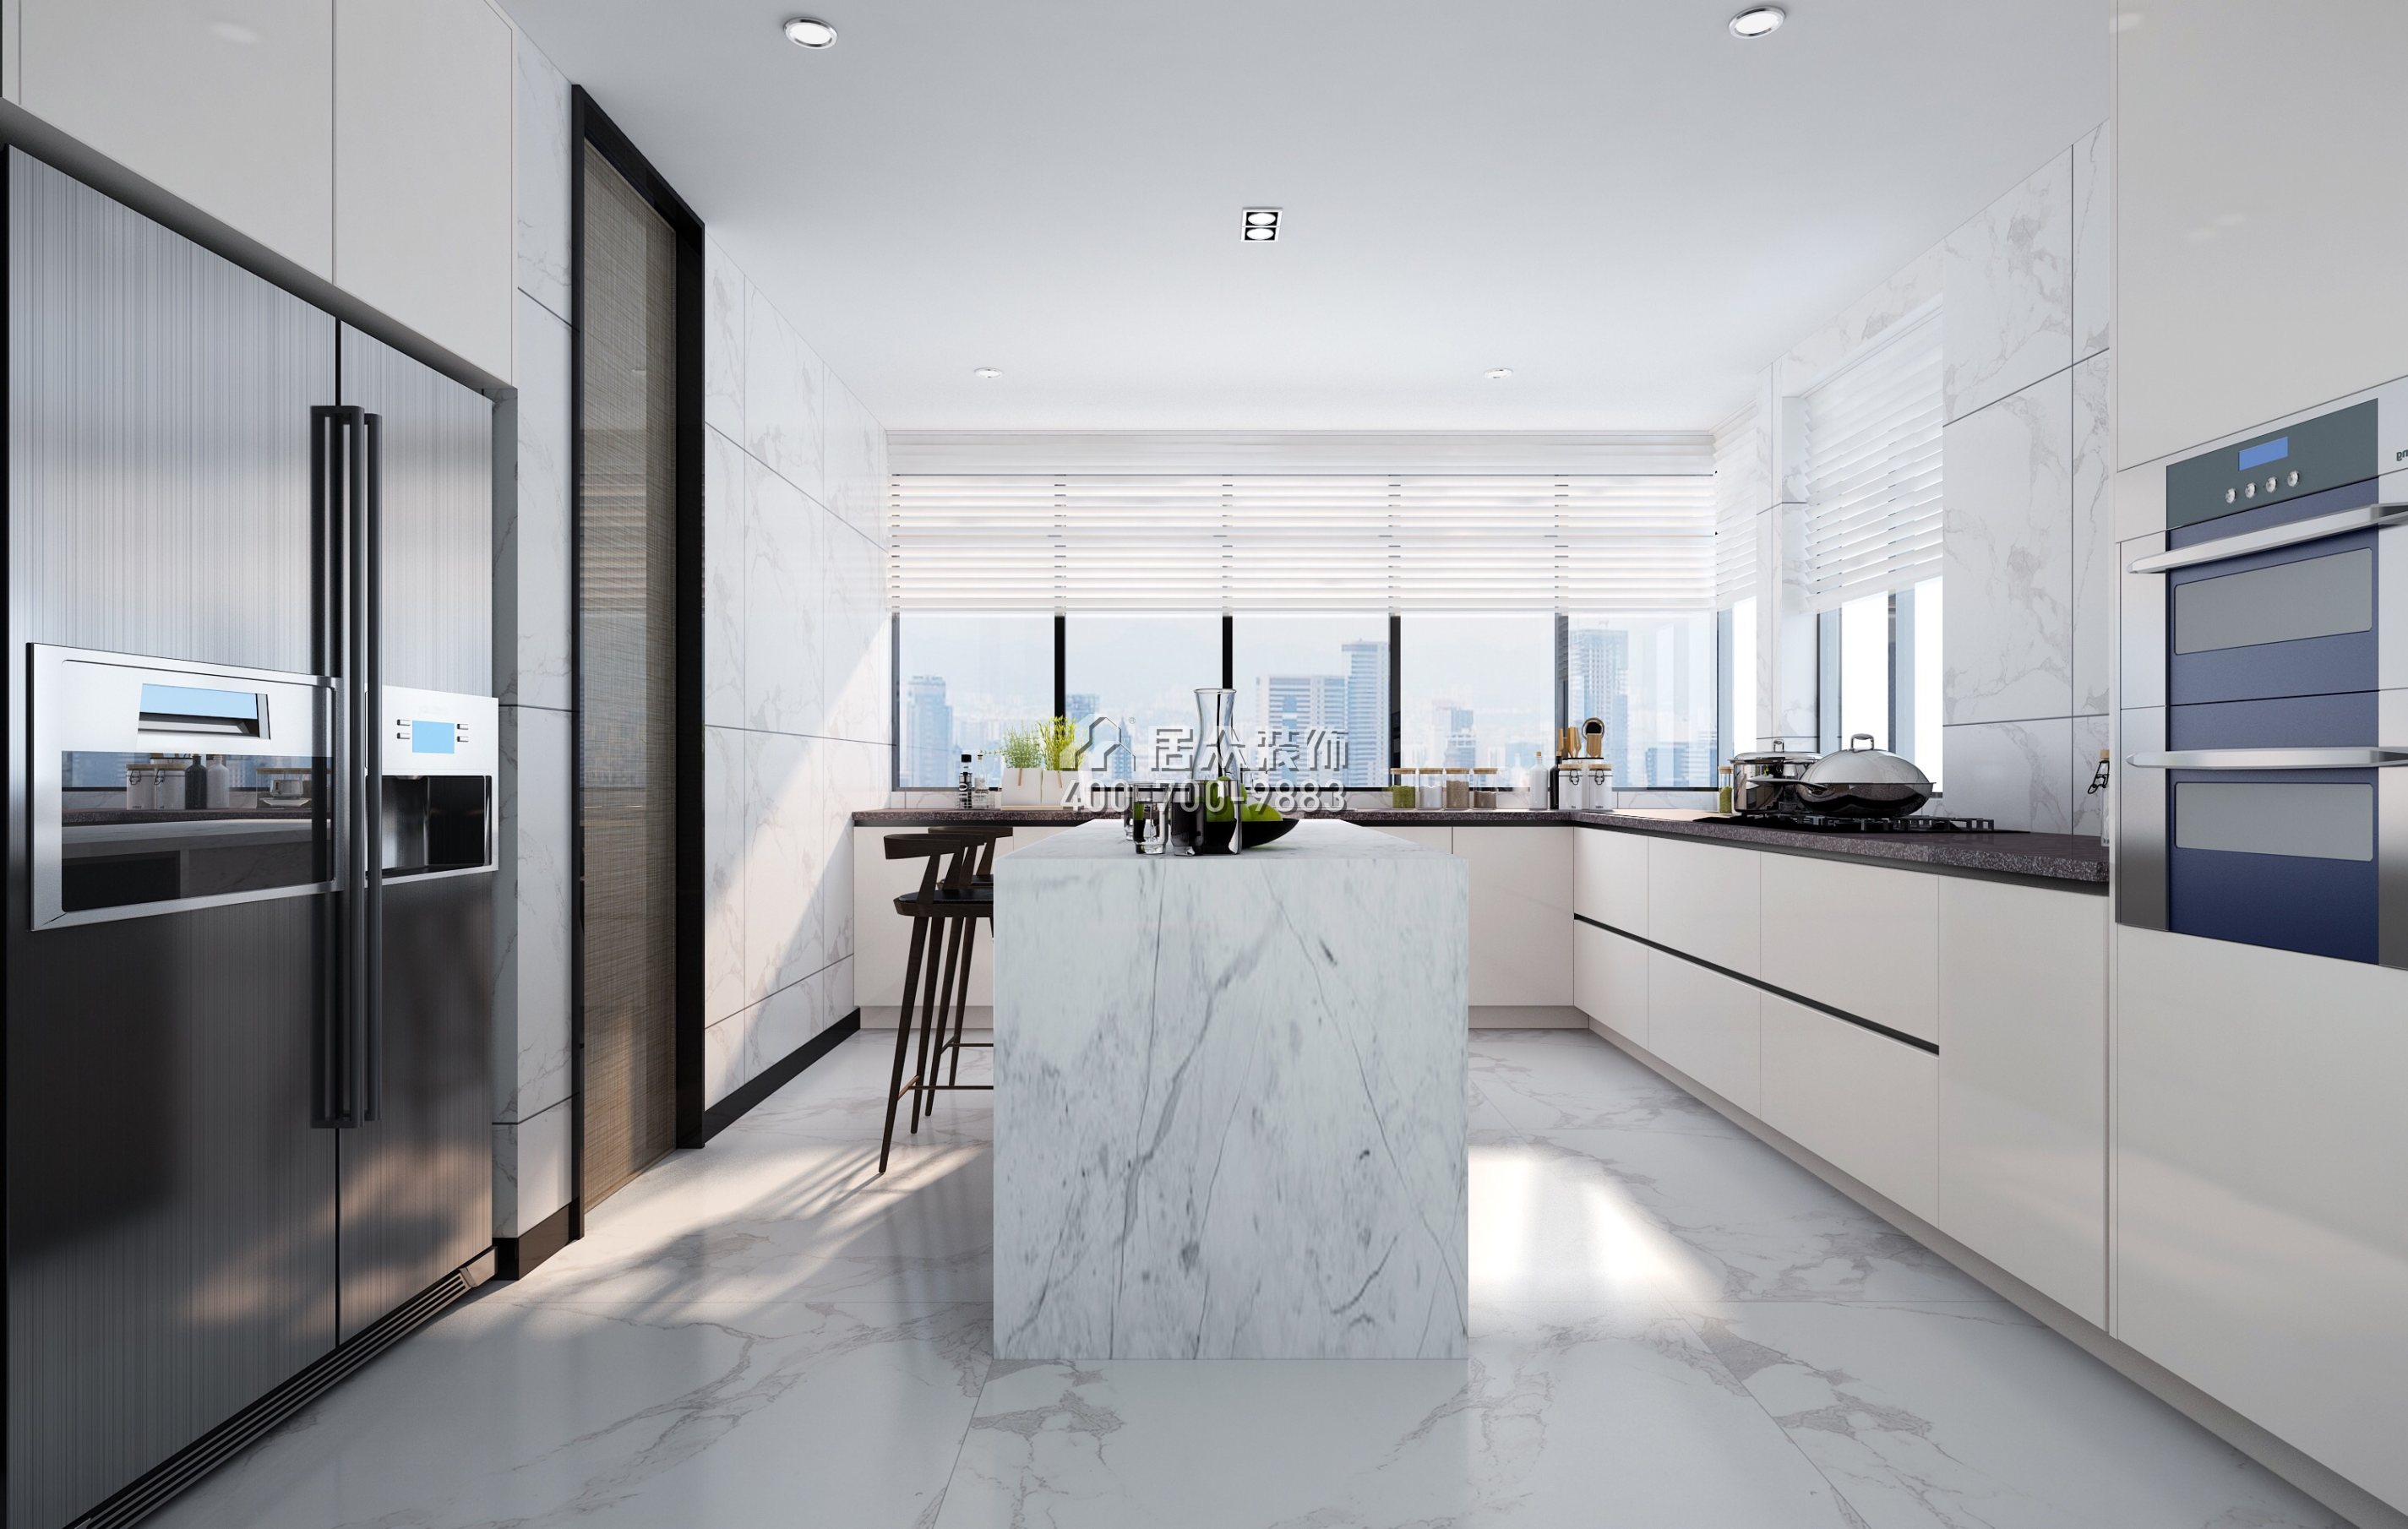 卓越维港北区230平方米现代简约风格平层户型厨房装修效果图